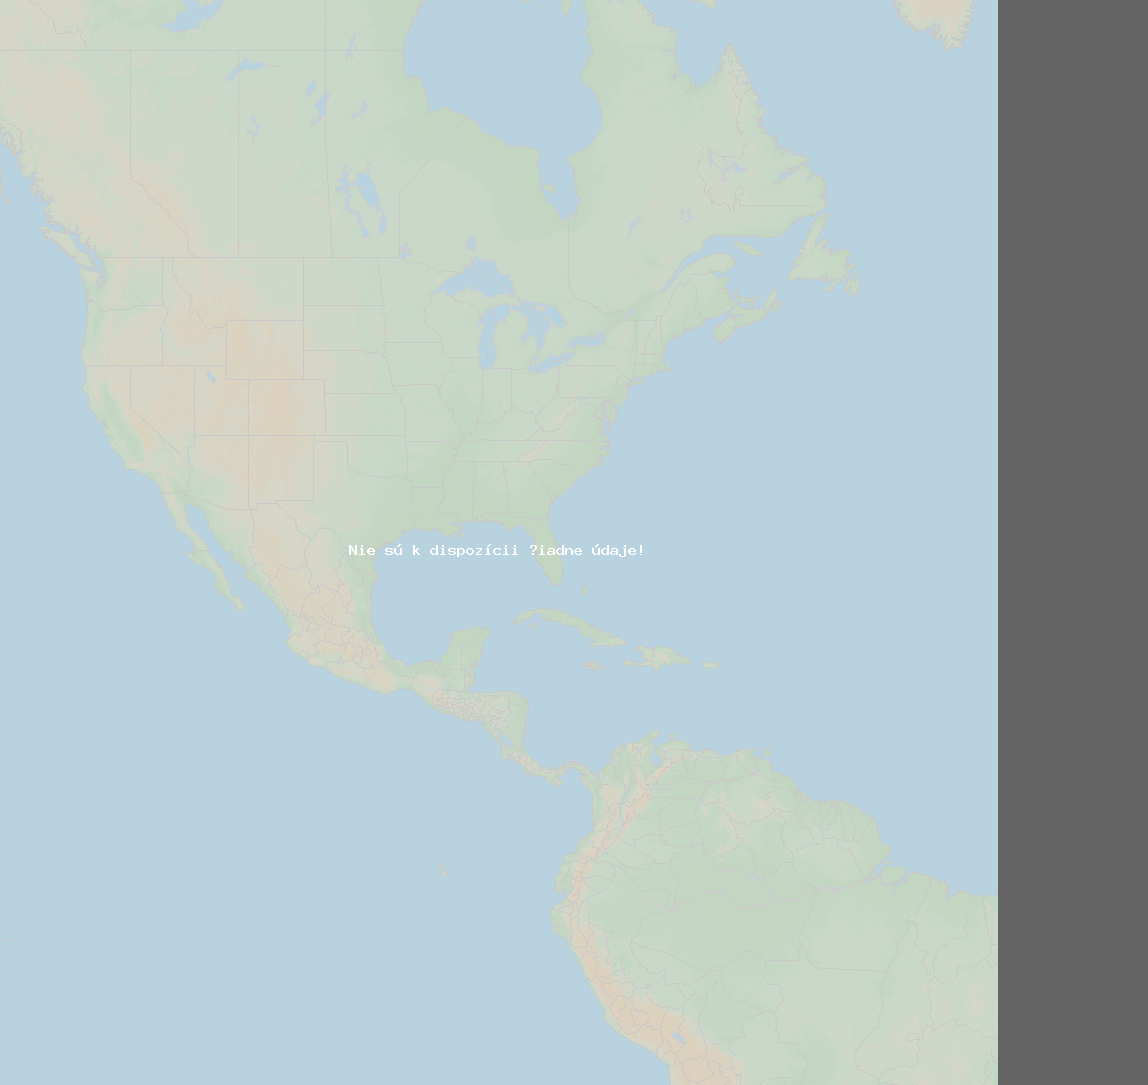 Pomer bleskov (Stanica Baie-Comeau QC) North America 2019 Jún